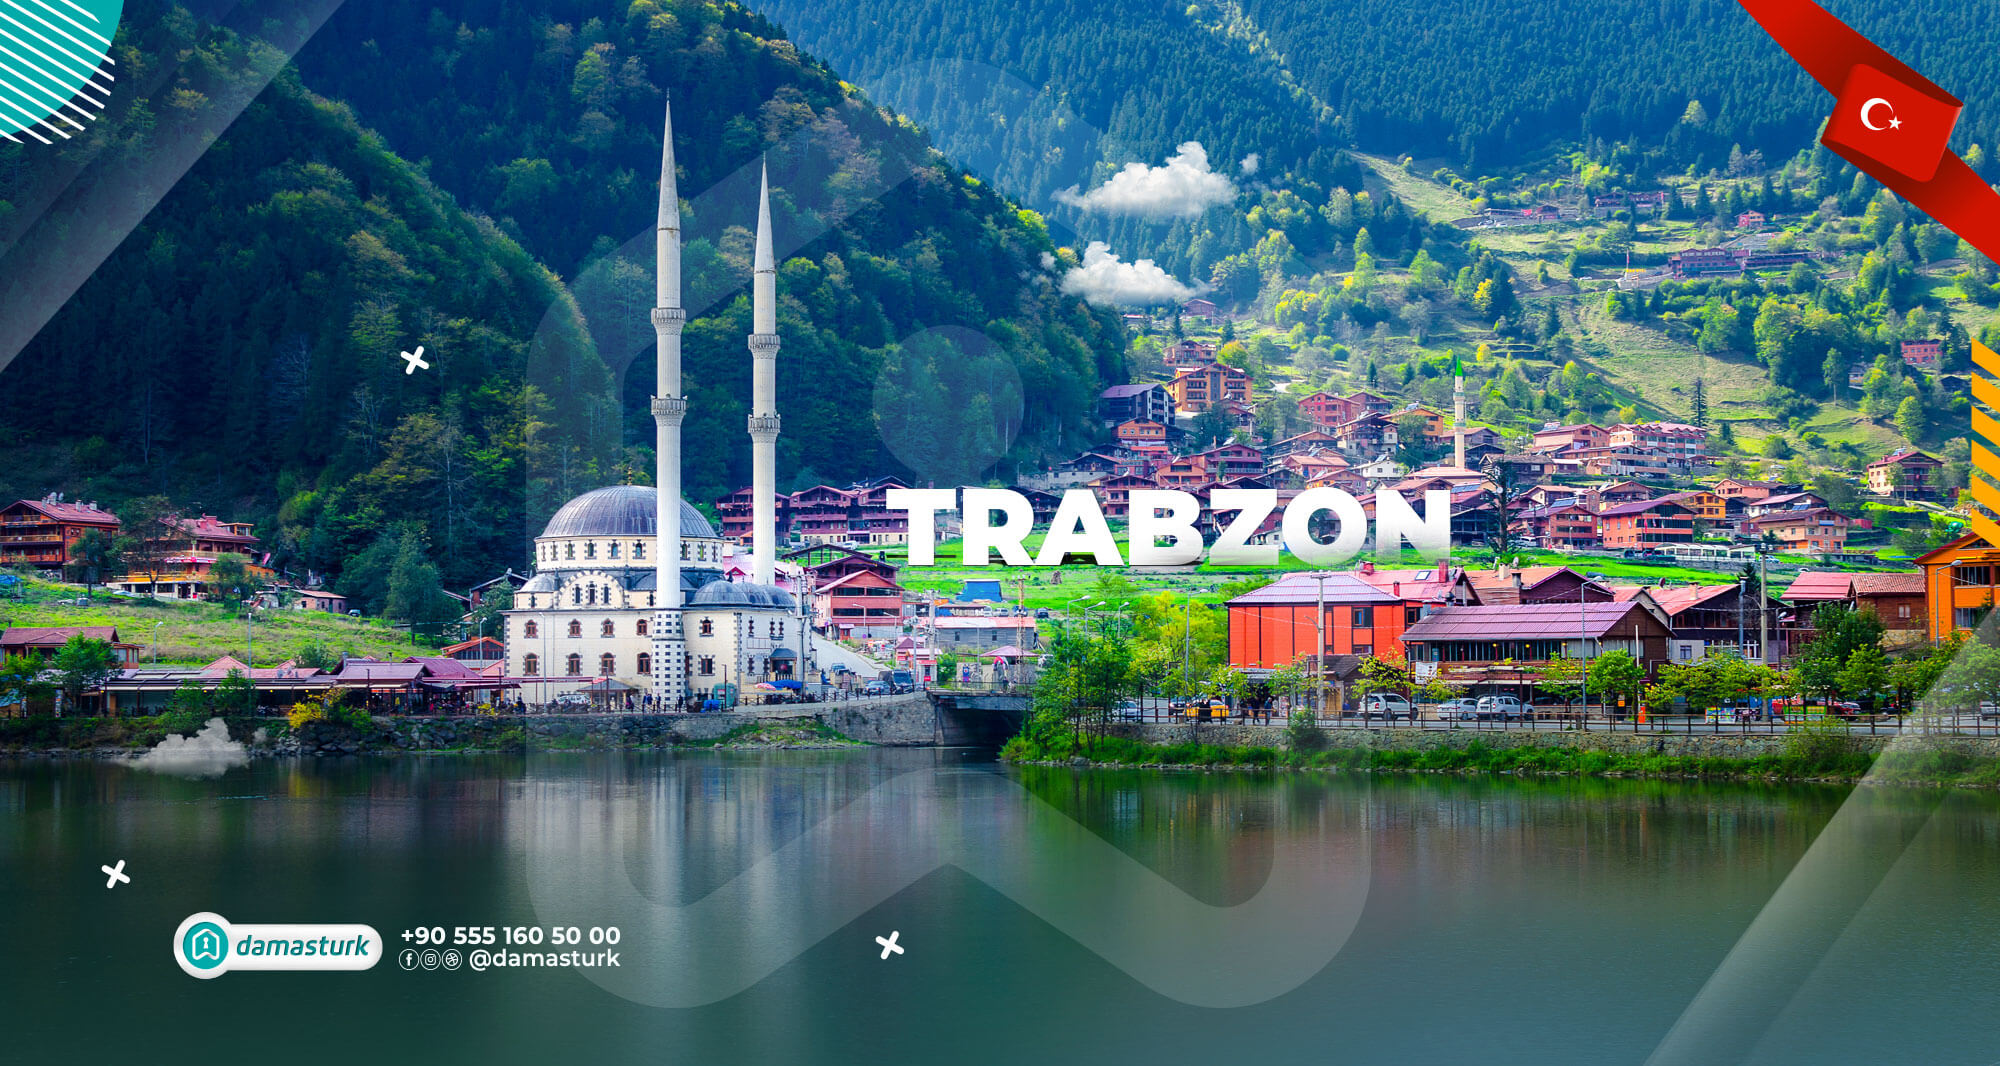 Propriétés à vendre à Trabzon 2022